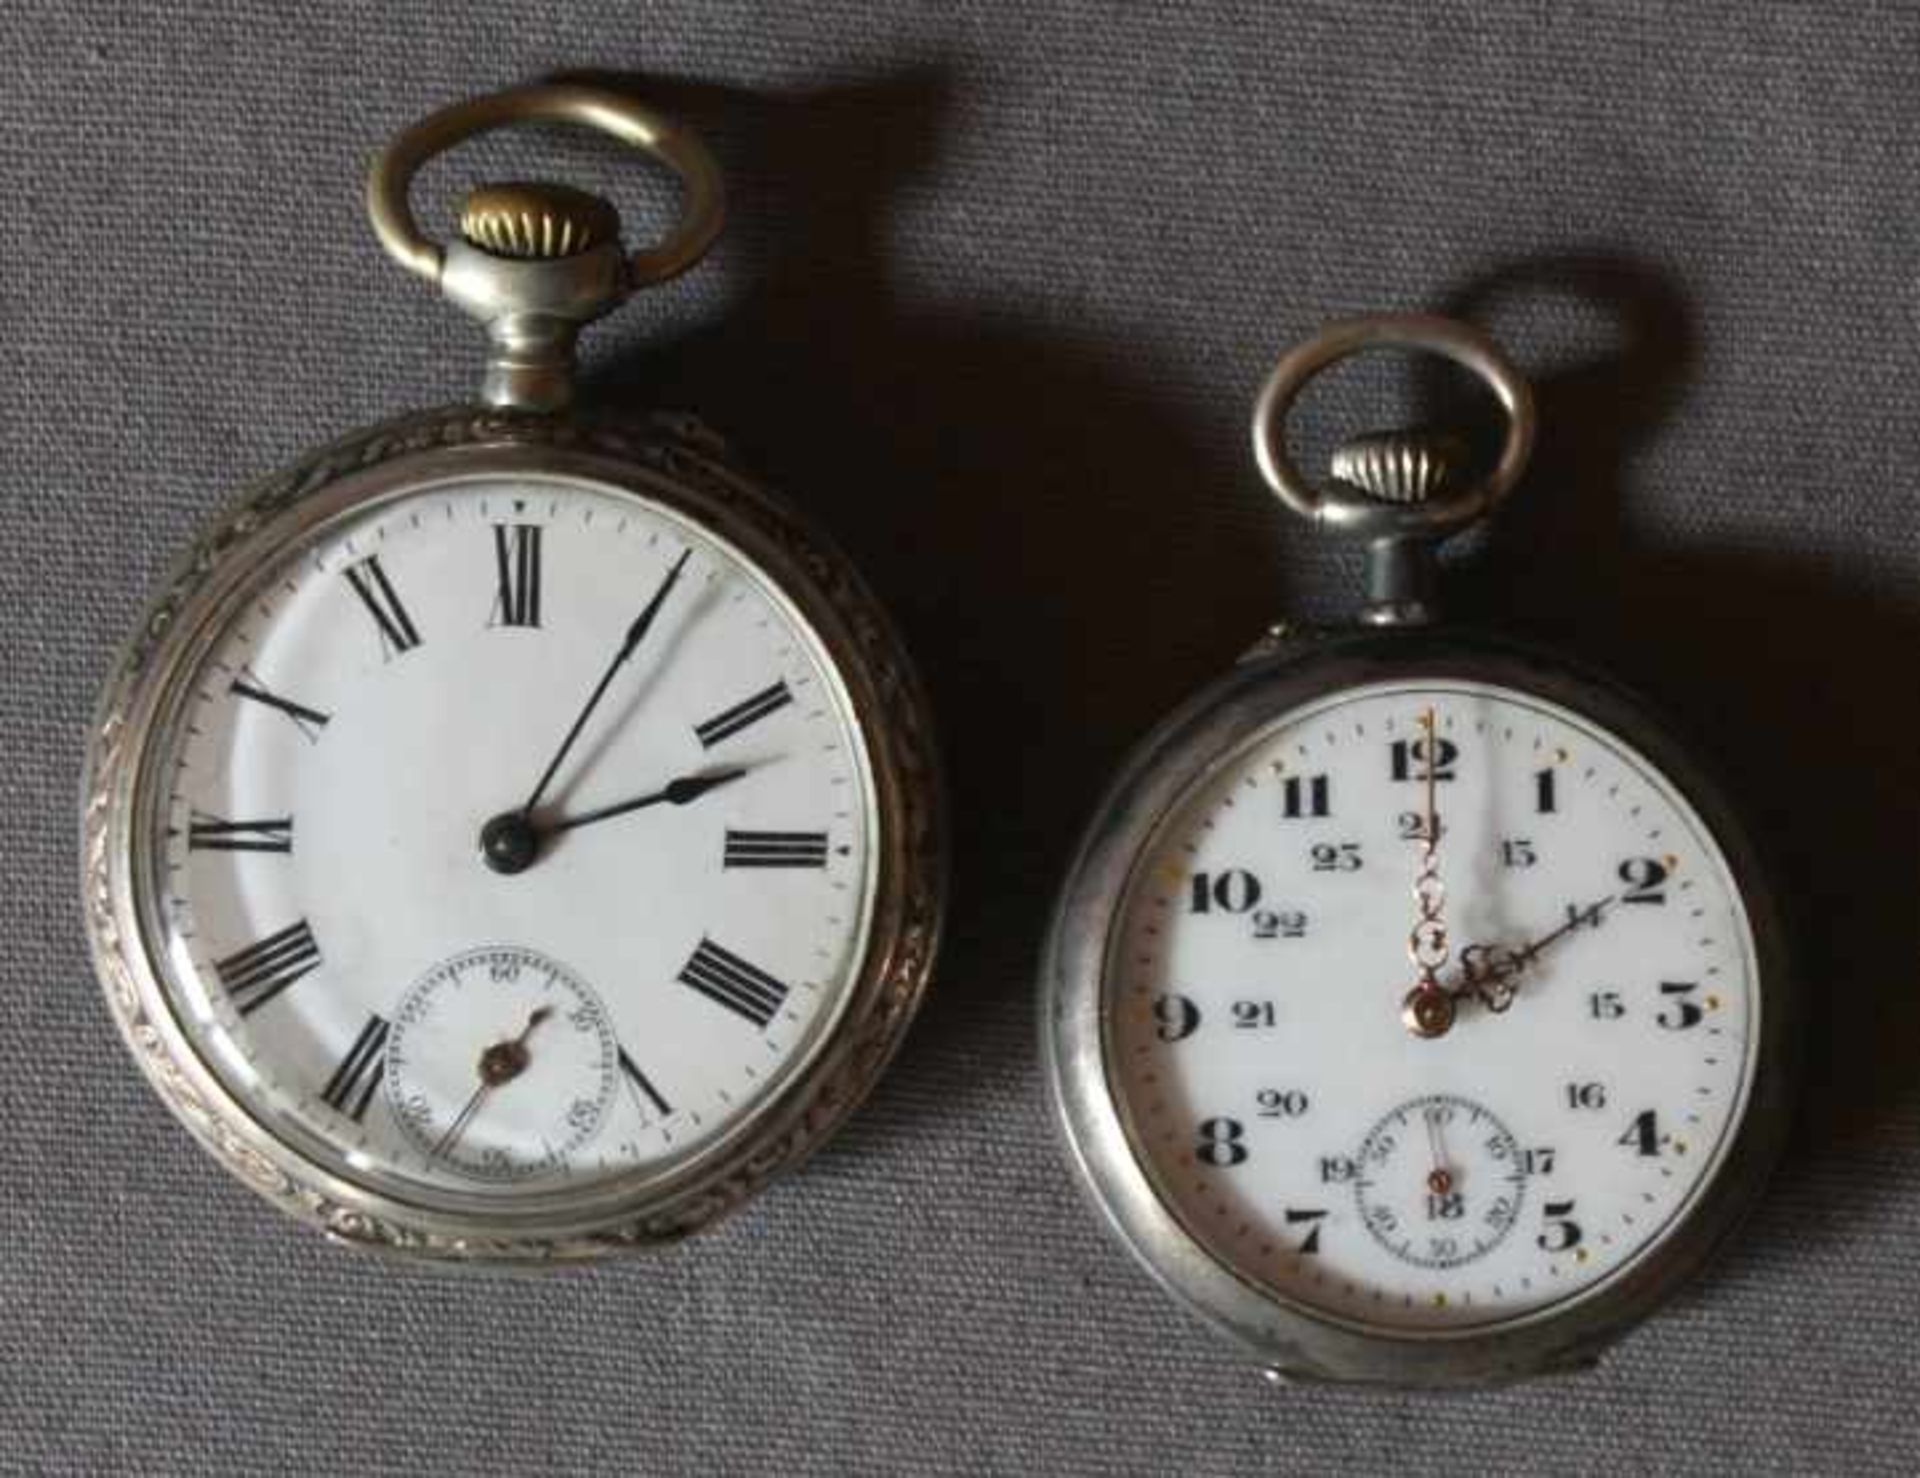 2 alte Taschenuhren Silber (800/000), punziert u.a. Halbmond und Krone, Gehäuserückseiten mit